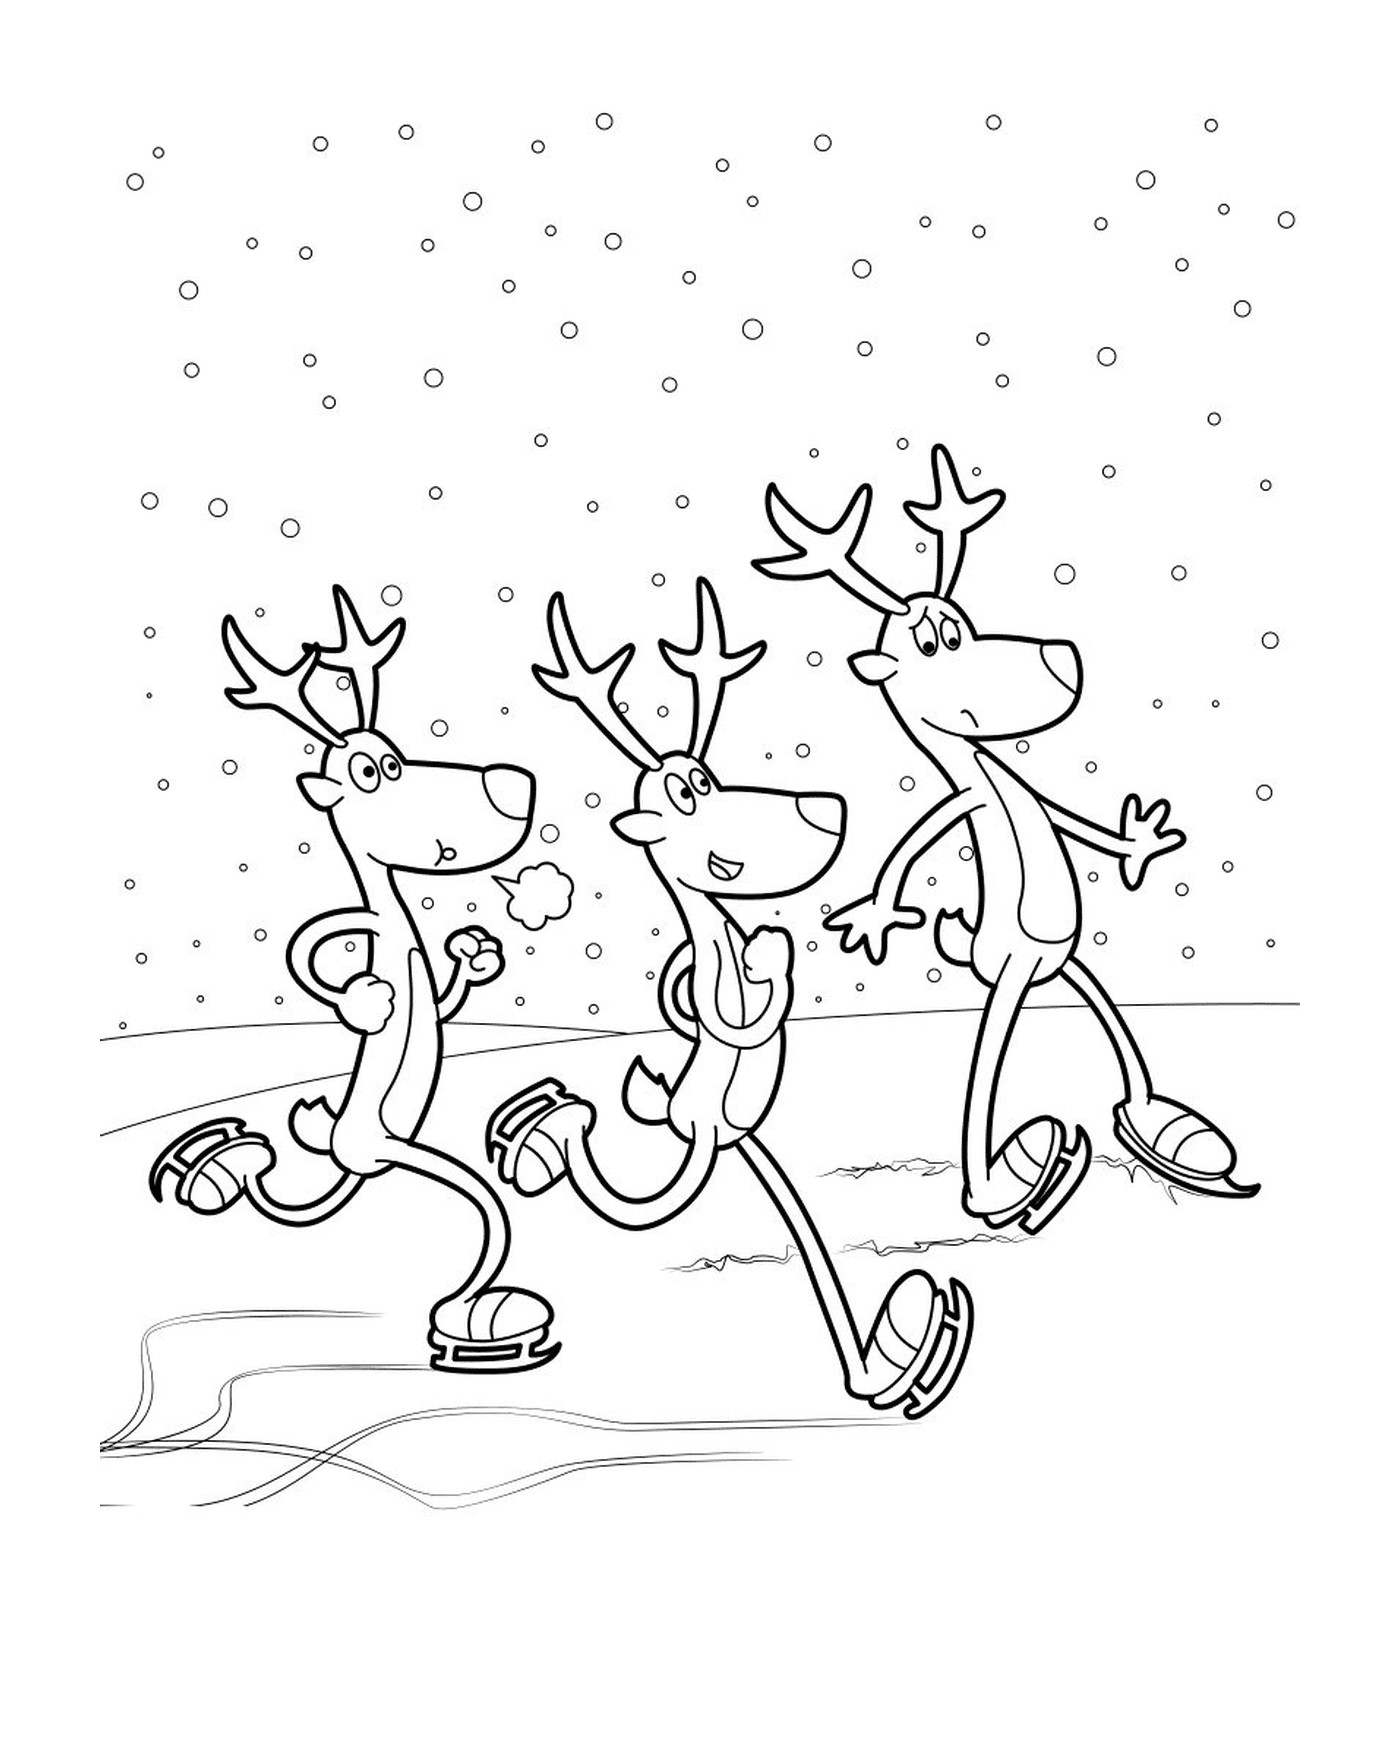  三头圣诞驯鹿, 丹雪、 福林、 彗星 